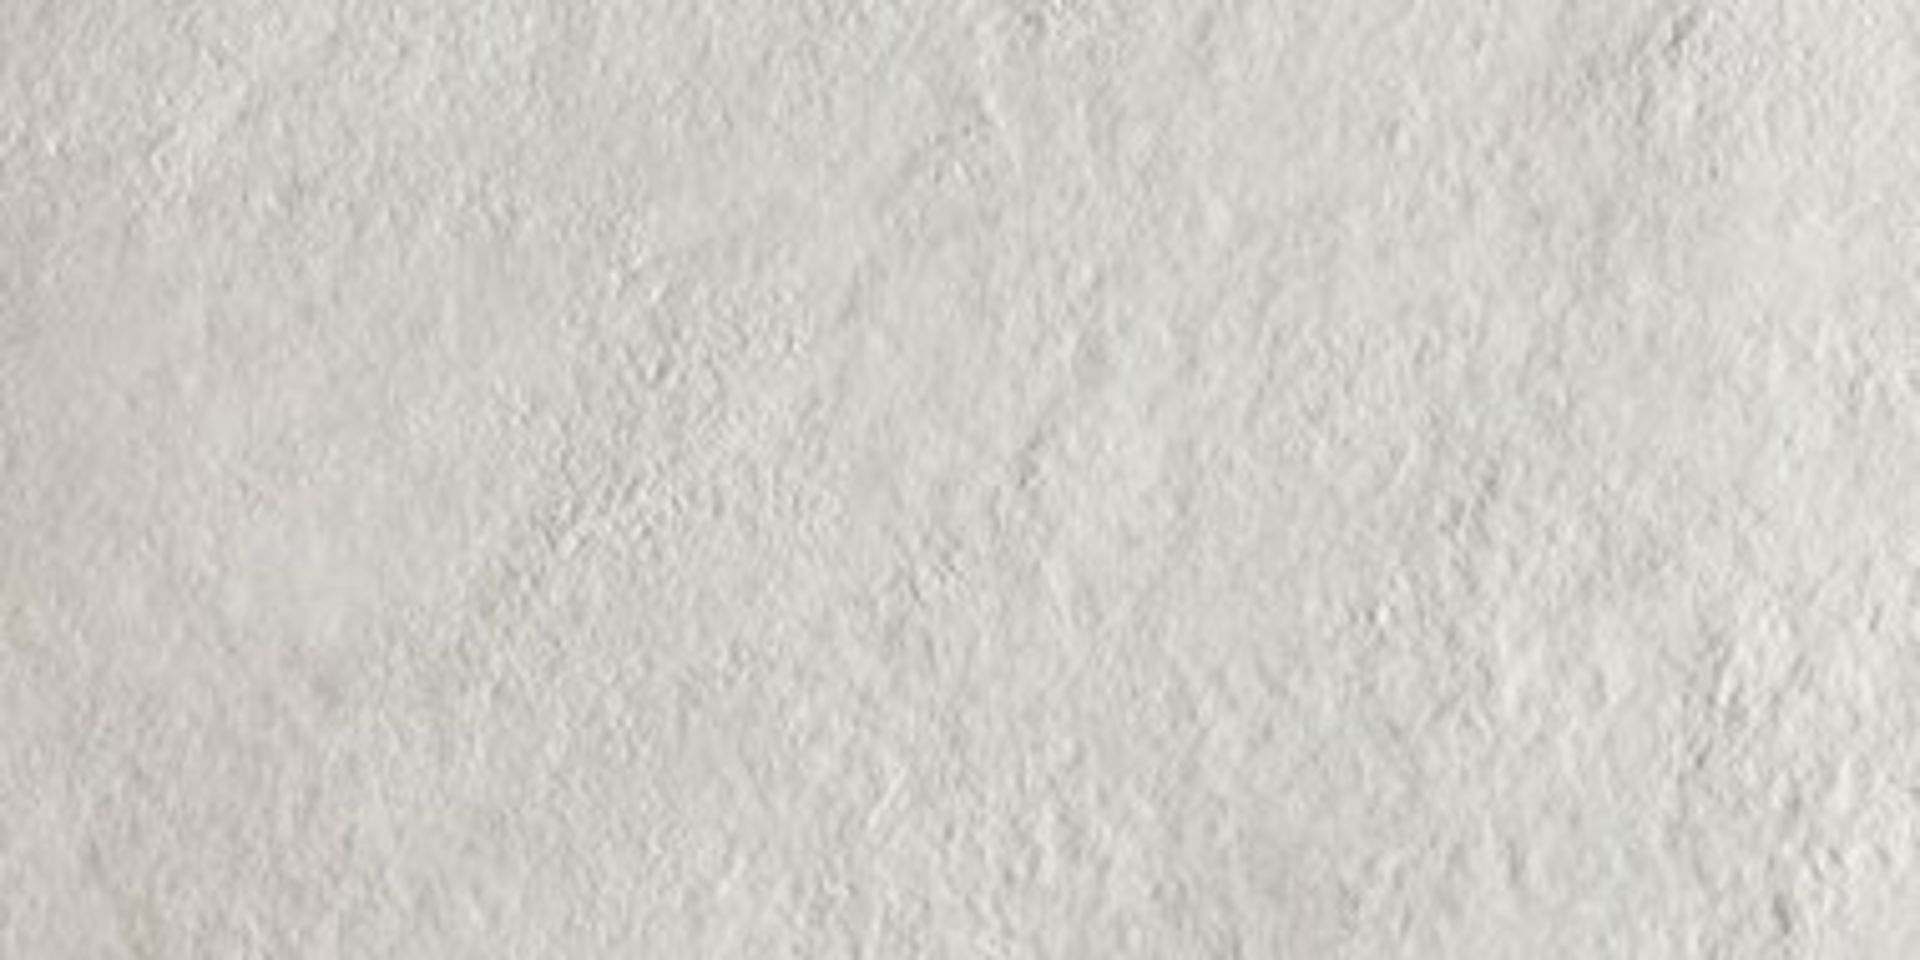 12 x Boxes of RAK Porcelain Floor or Wall Tiles - Concrete Rustic White Design - 30 x 60 cm Tiles